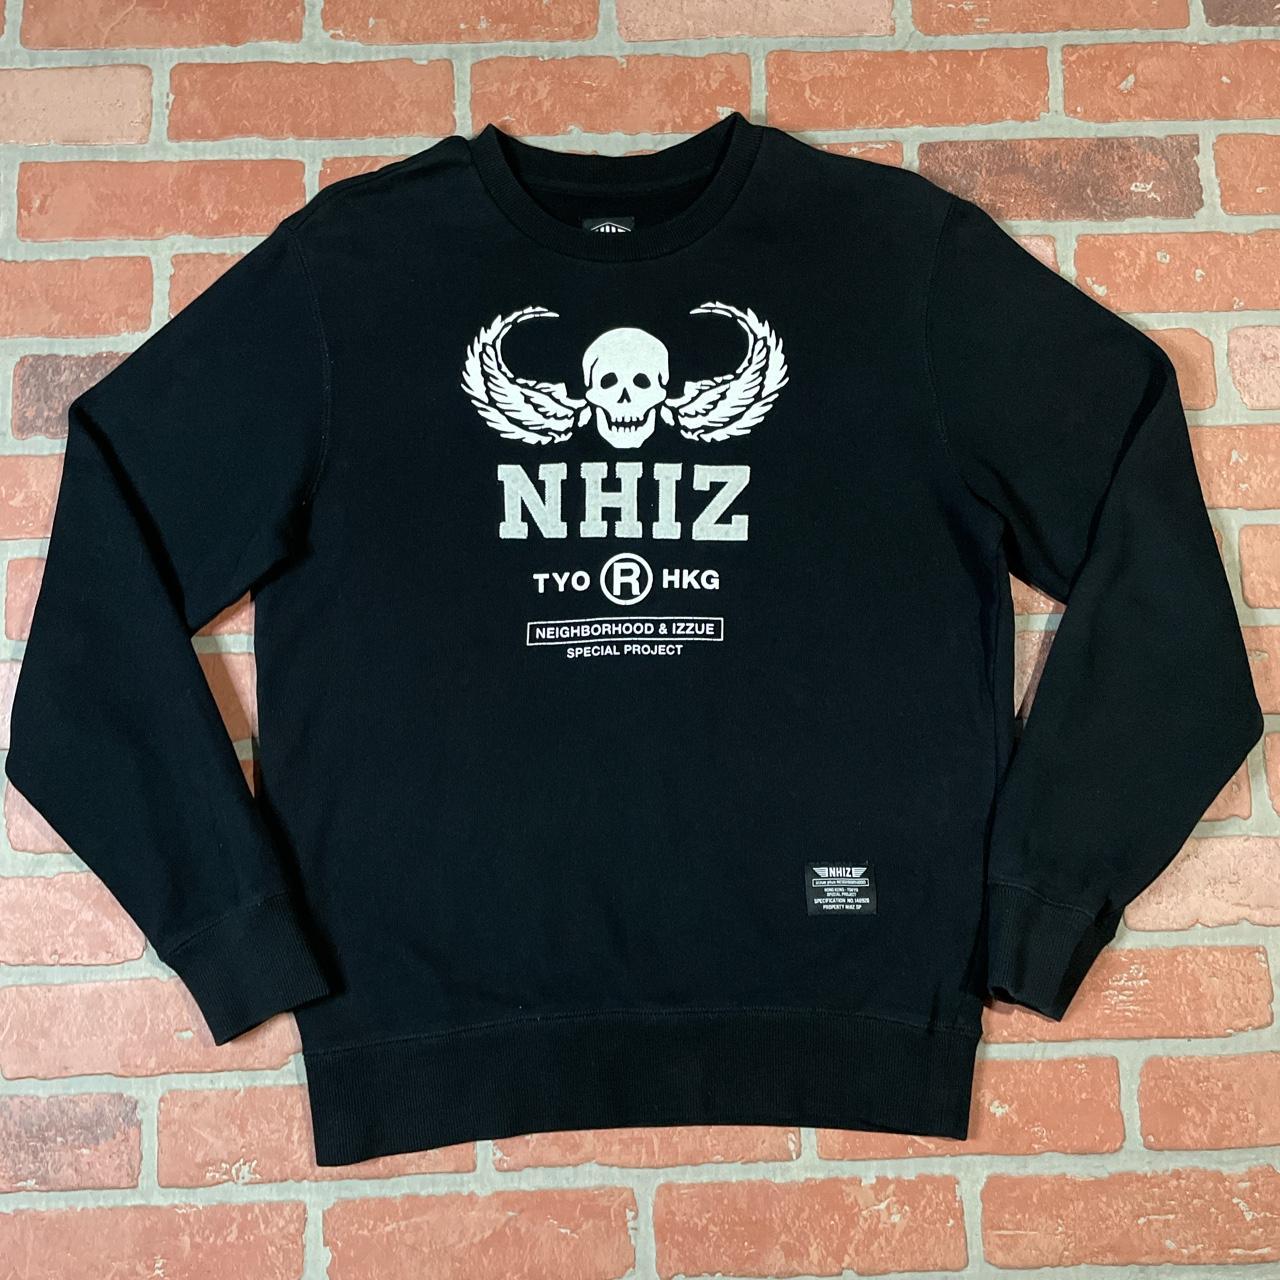 Neighborhood x Izzue Sweatshirt Solid Black... - Depop